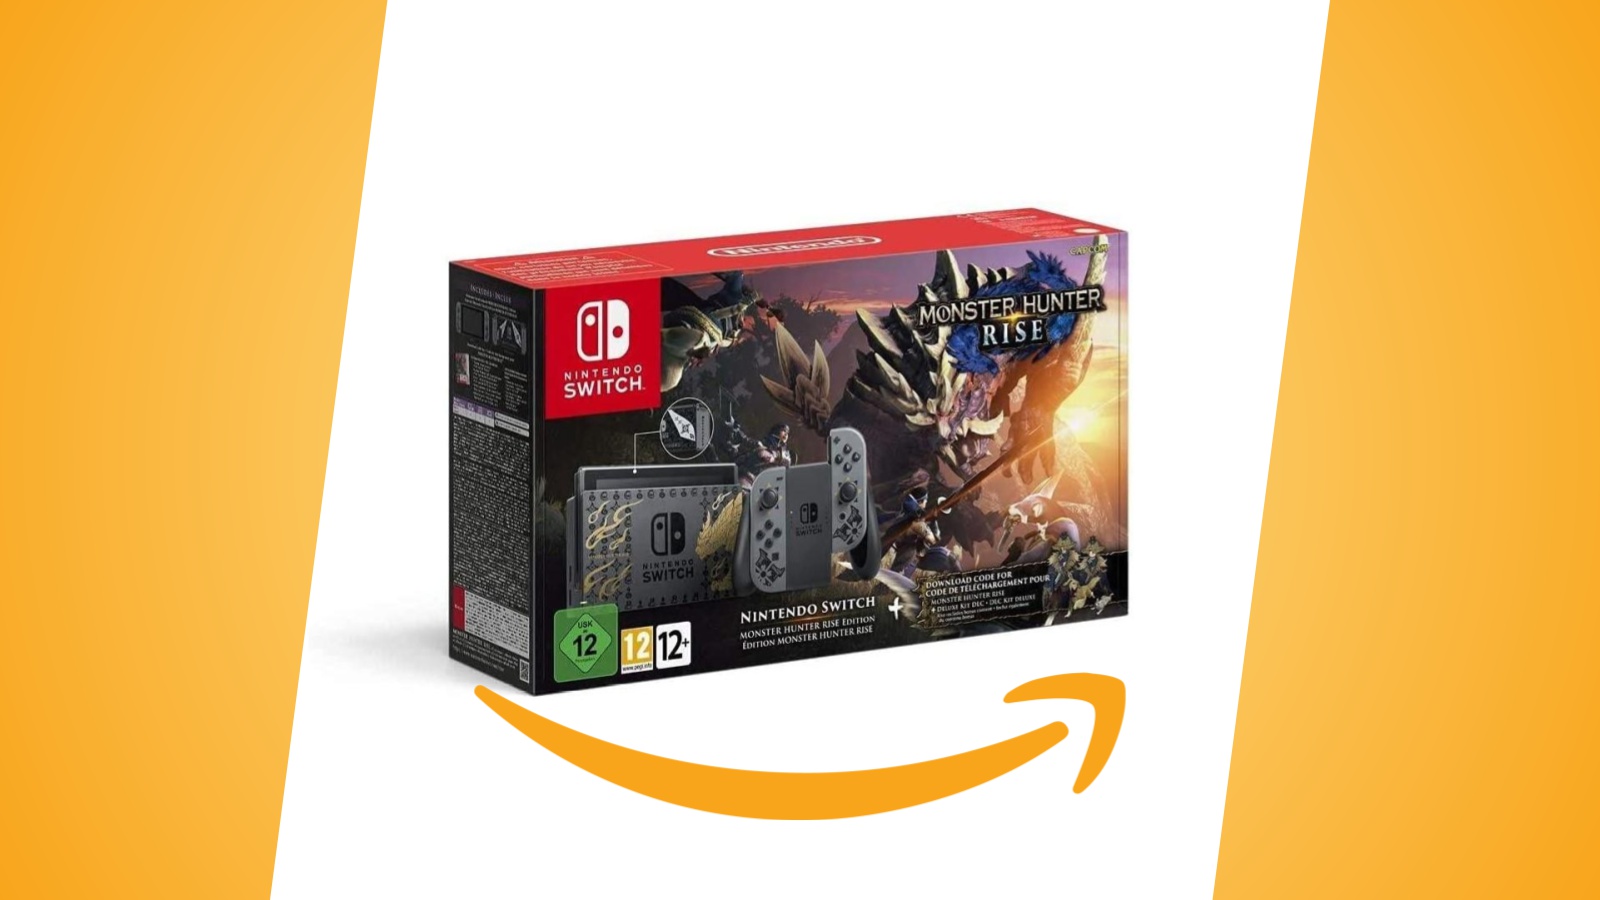 Offerte Amazon: Nintendo Switch in edizione Monster Hunter Rise, con gioco e DLC, è ora in sconto